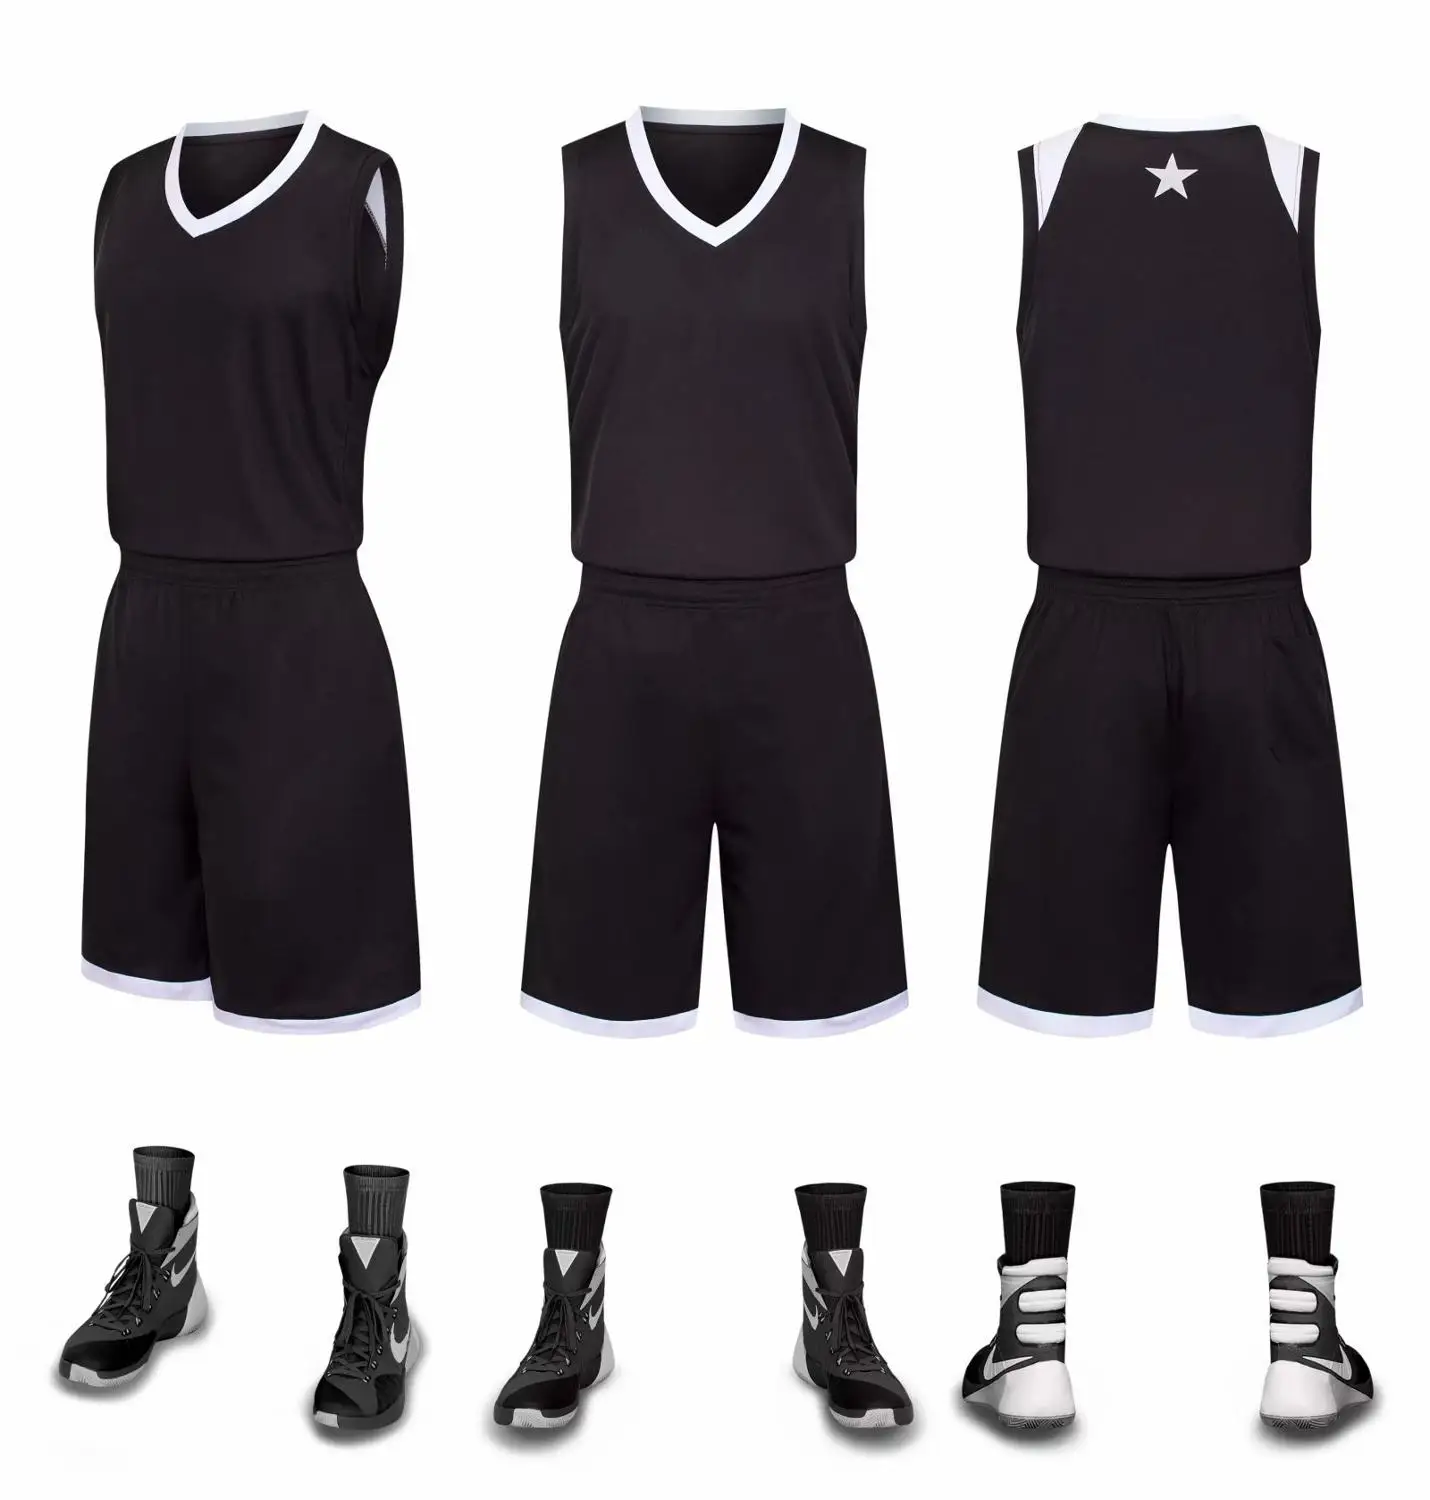 Новые детские баскетбольные майки для взрослых, набор, пустая Мужская баскетбольная майка, Униформа, тренировочные майки, костюмы на заказ - Цвет: YJ836 black